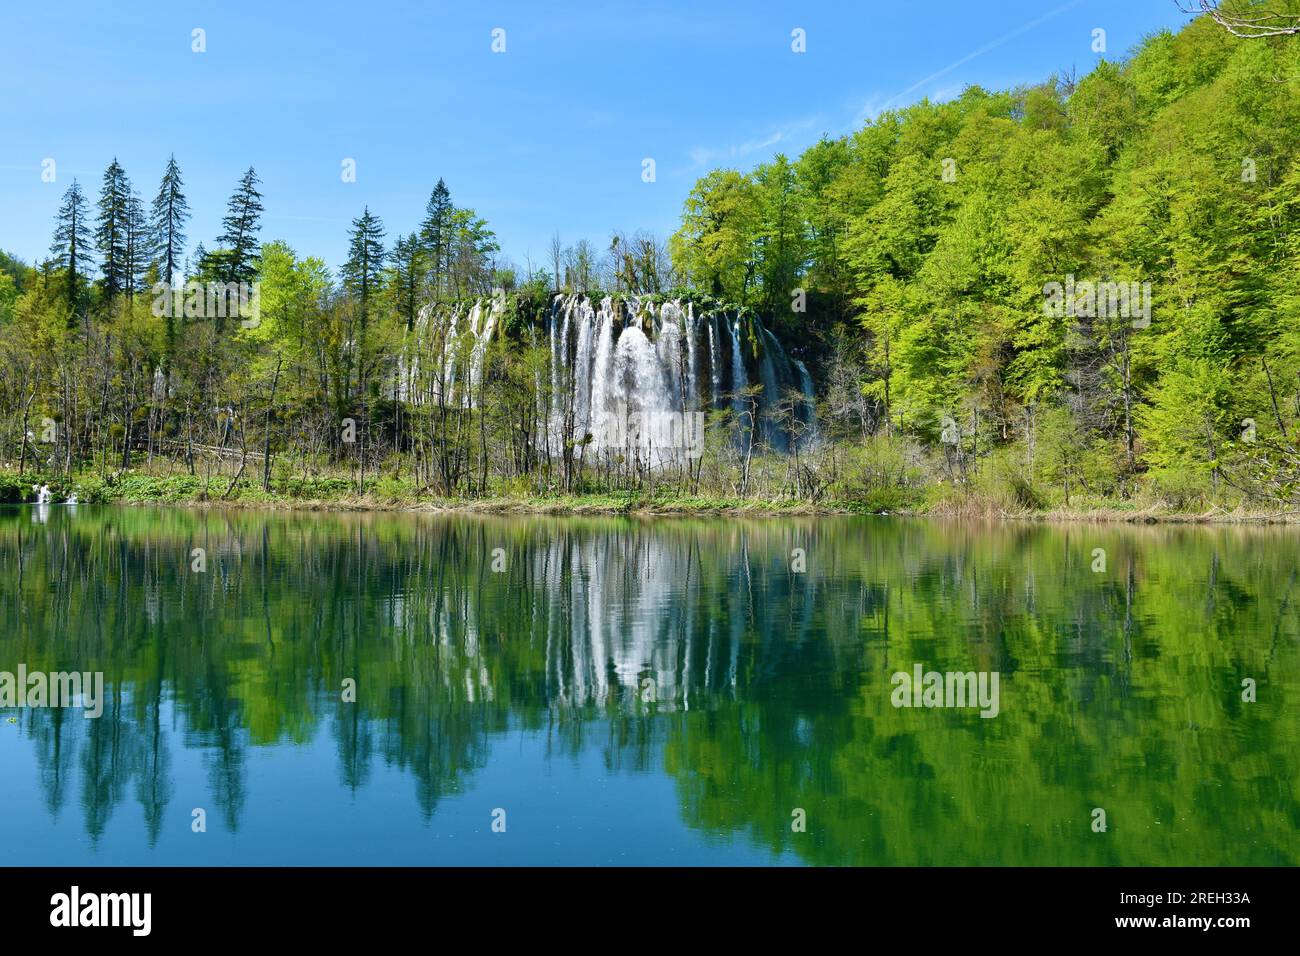 Vista de la cascada de Prštavac y el lago Gradinsko jezero en el parque nationa de los lagos de Plitvice en el condado de Lika-Senj, Croacia Foto de stock